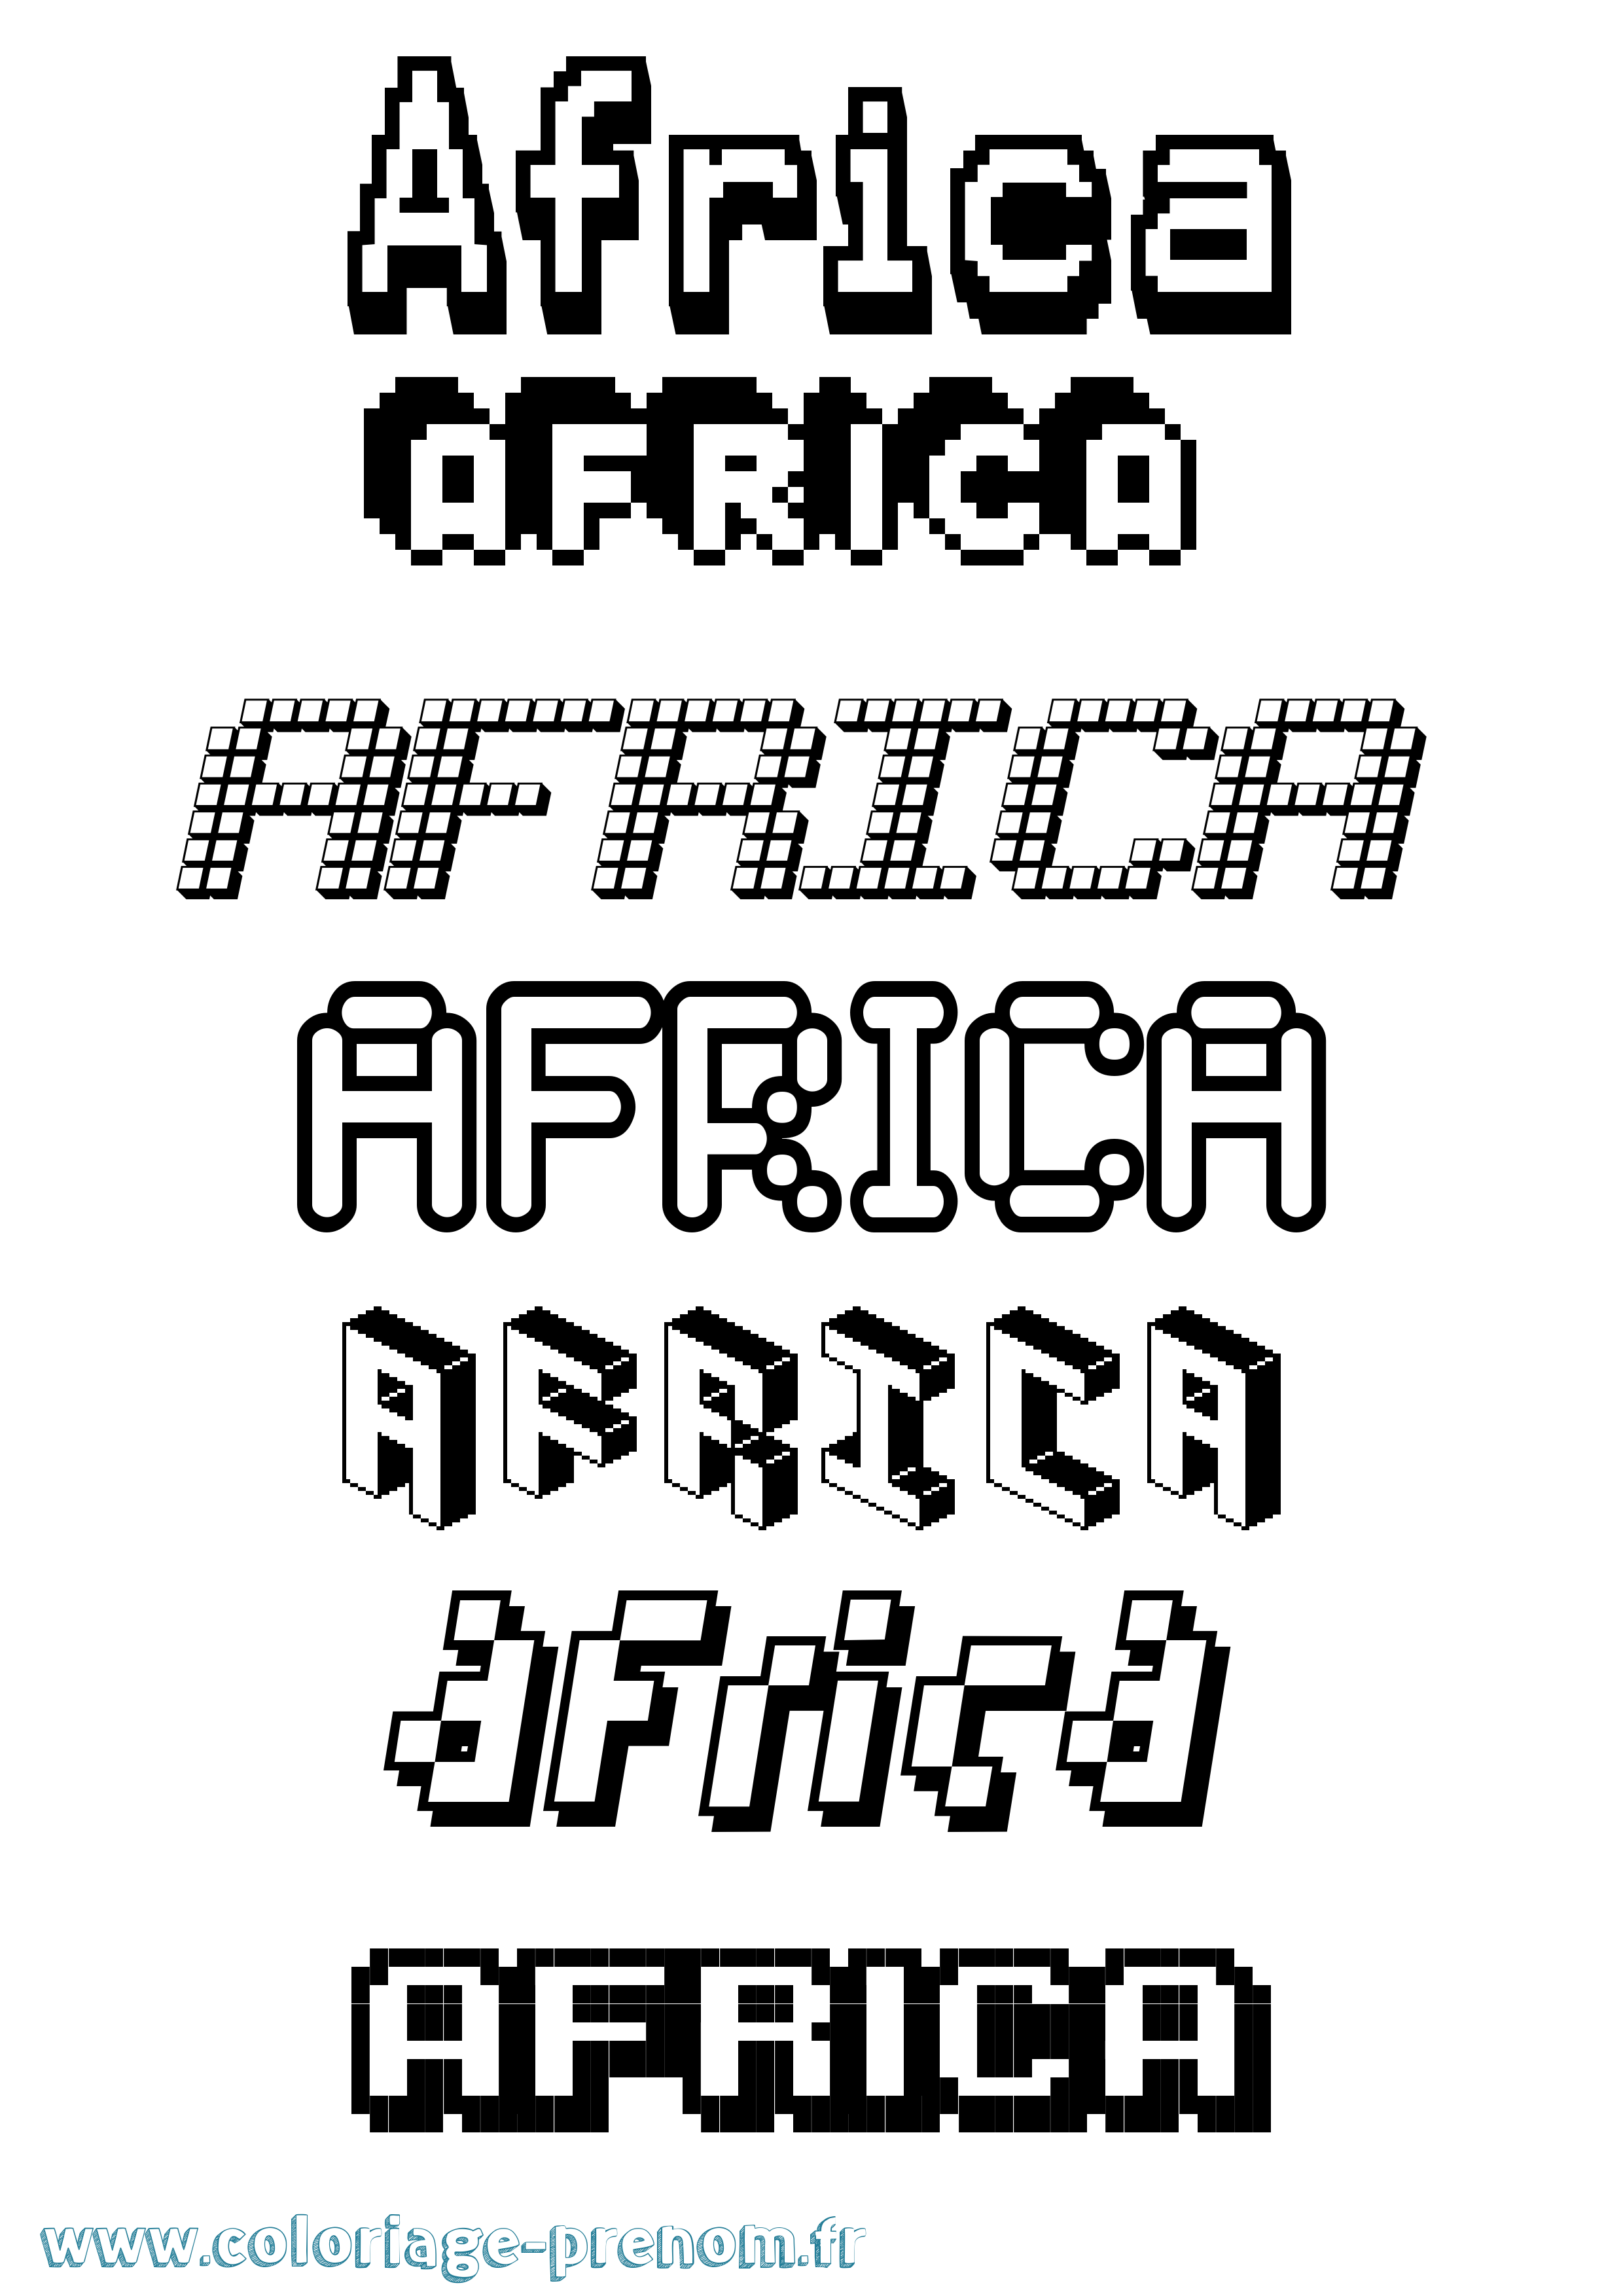 Coloriage prénom Africa Pixel